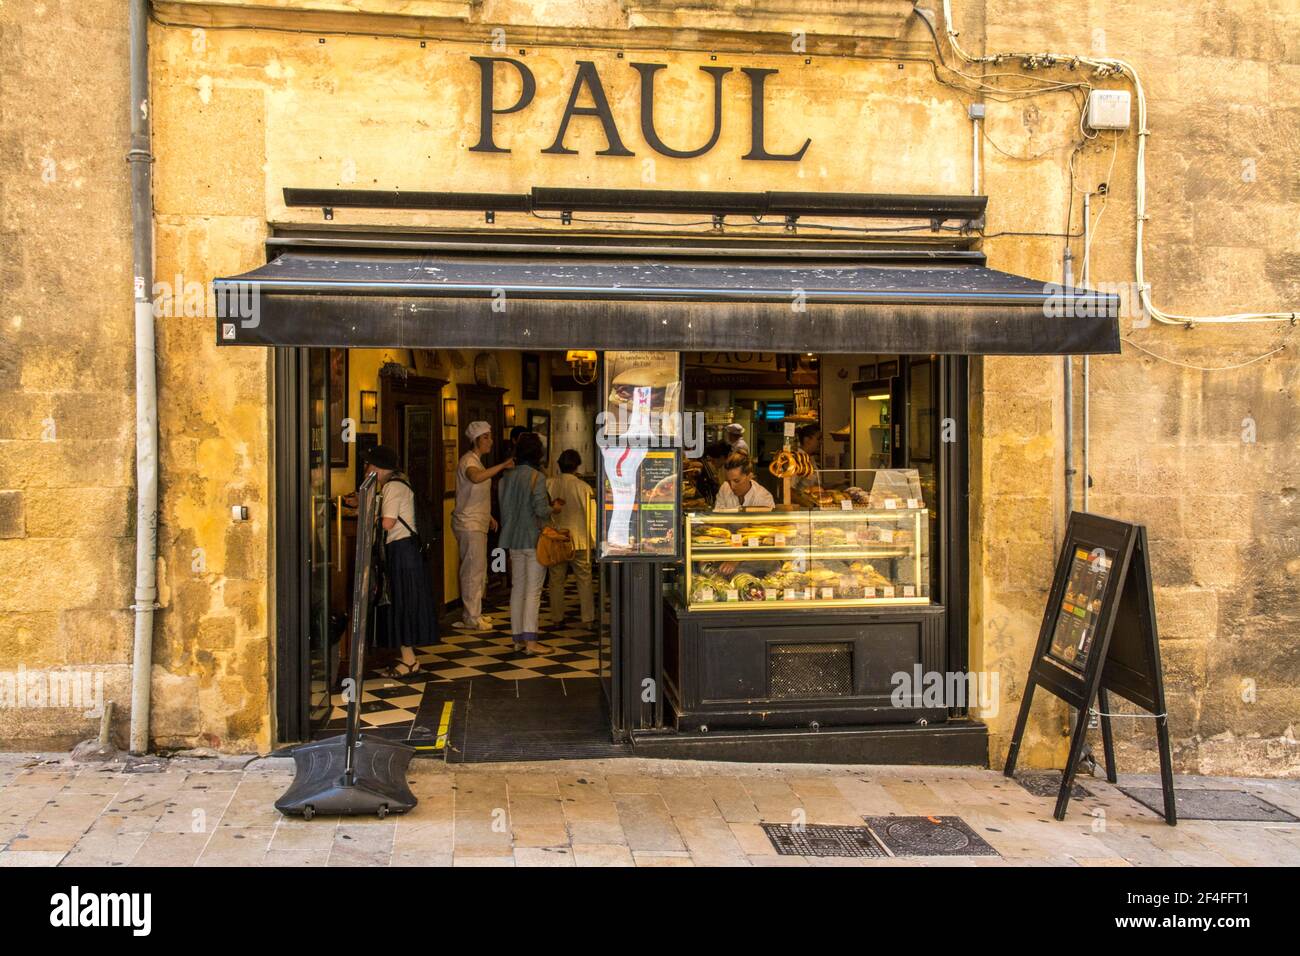 Boulangerie Paul, Sandwich, Aix en provence, Provence, Sud de la France, France Banque D'Images